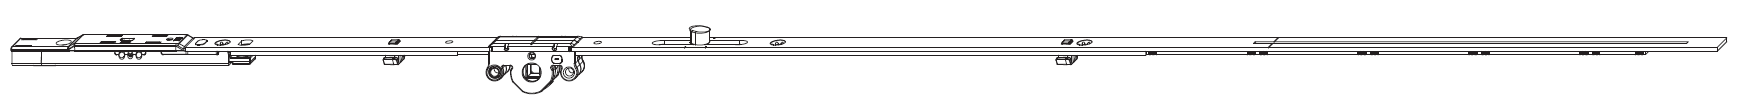 MAICO -  Cremonese MULTI-MATIC anta a bandiera altezza maniglia fissa con puntale chiusura ad espansione per seconda anta - gr / dim. 1700 - entrata 15 - alt. man. 500 - lbb/hbb 1591 - 1700